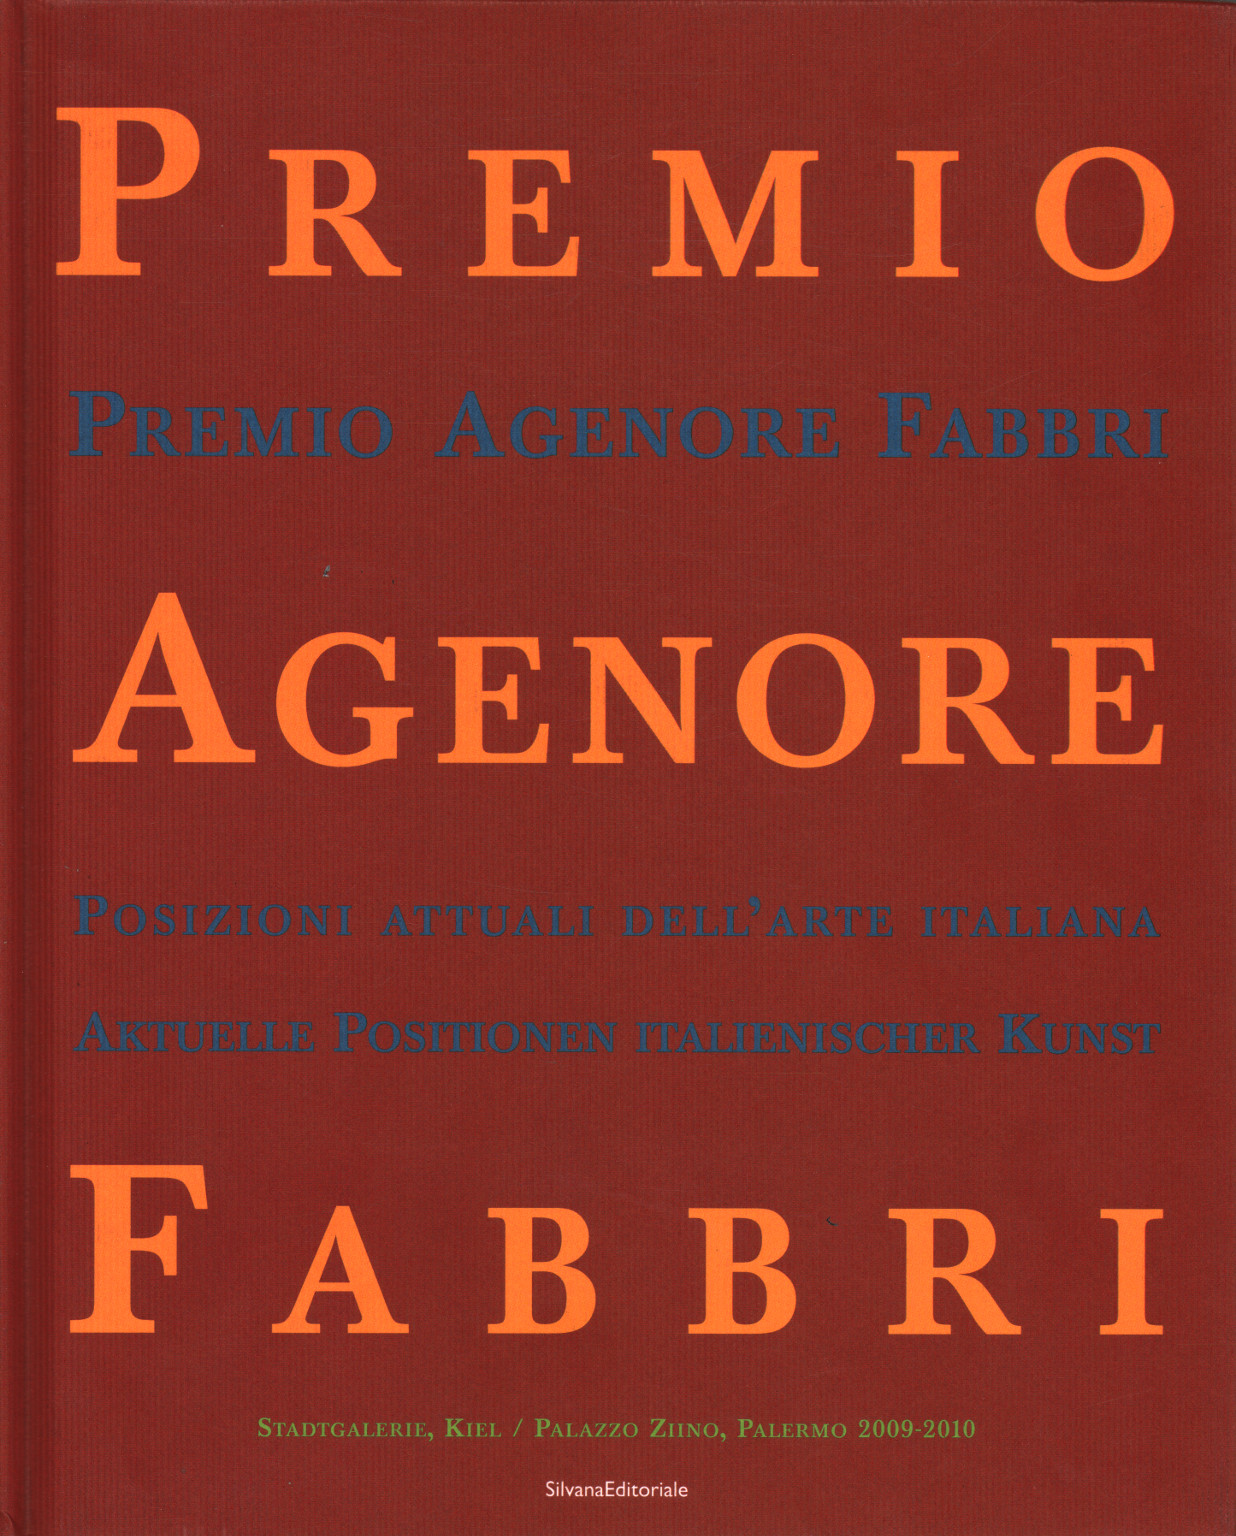 Premio Agenore Fabbri IV, s.una.